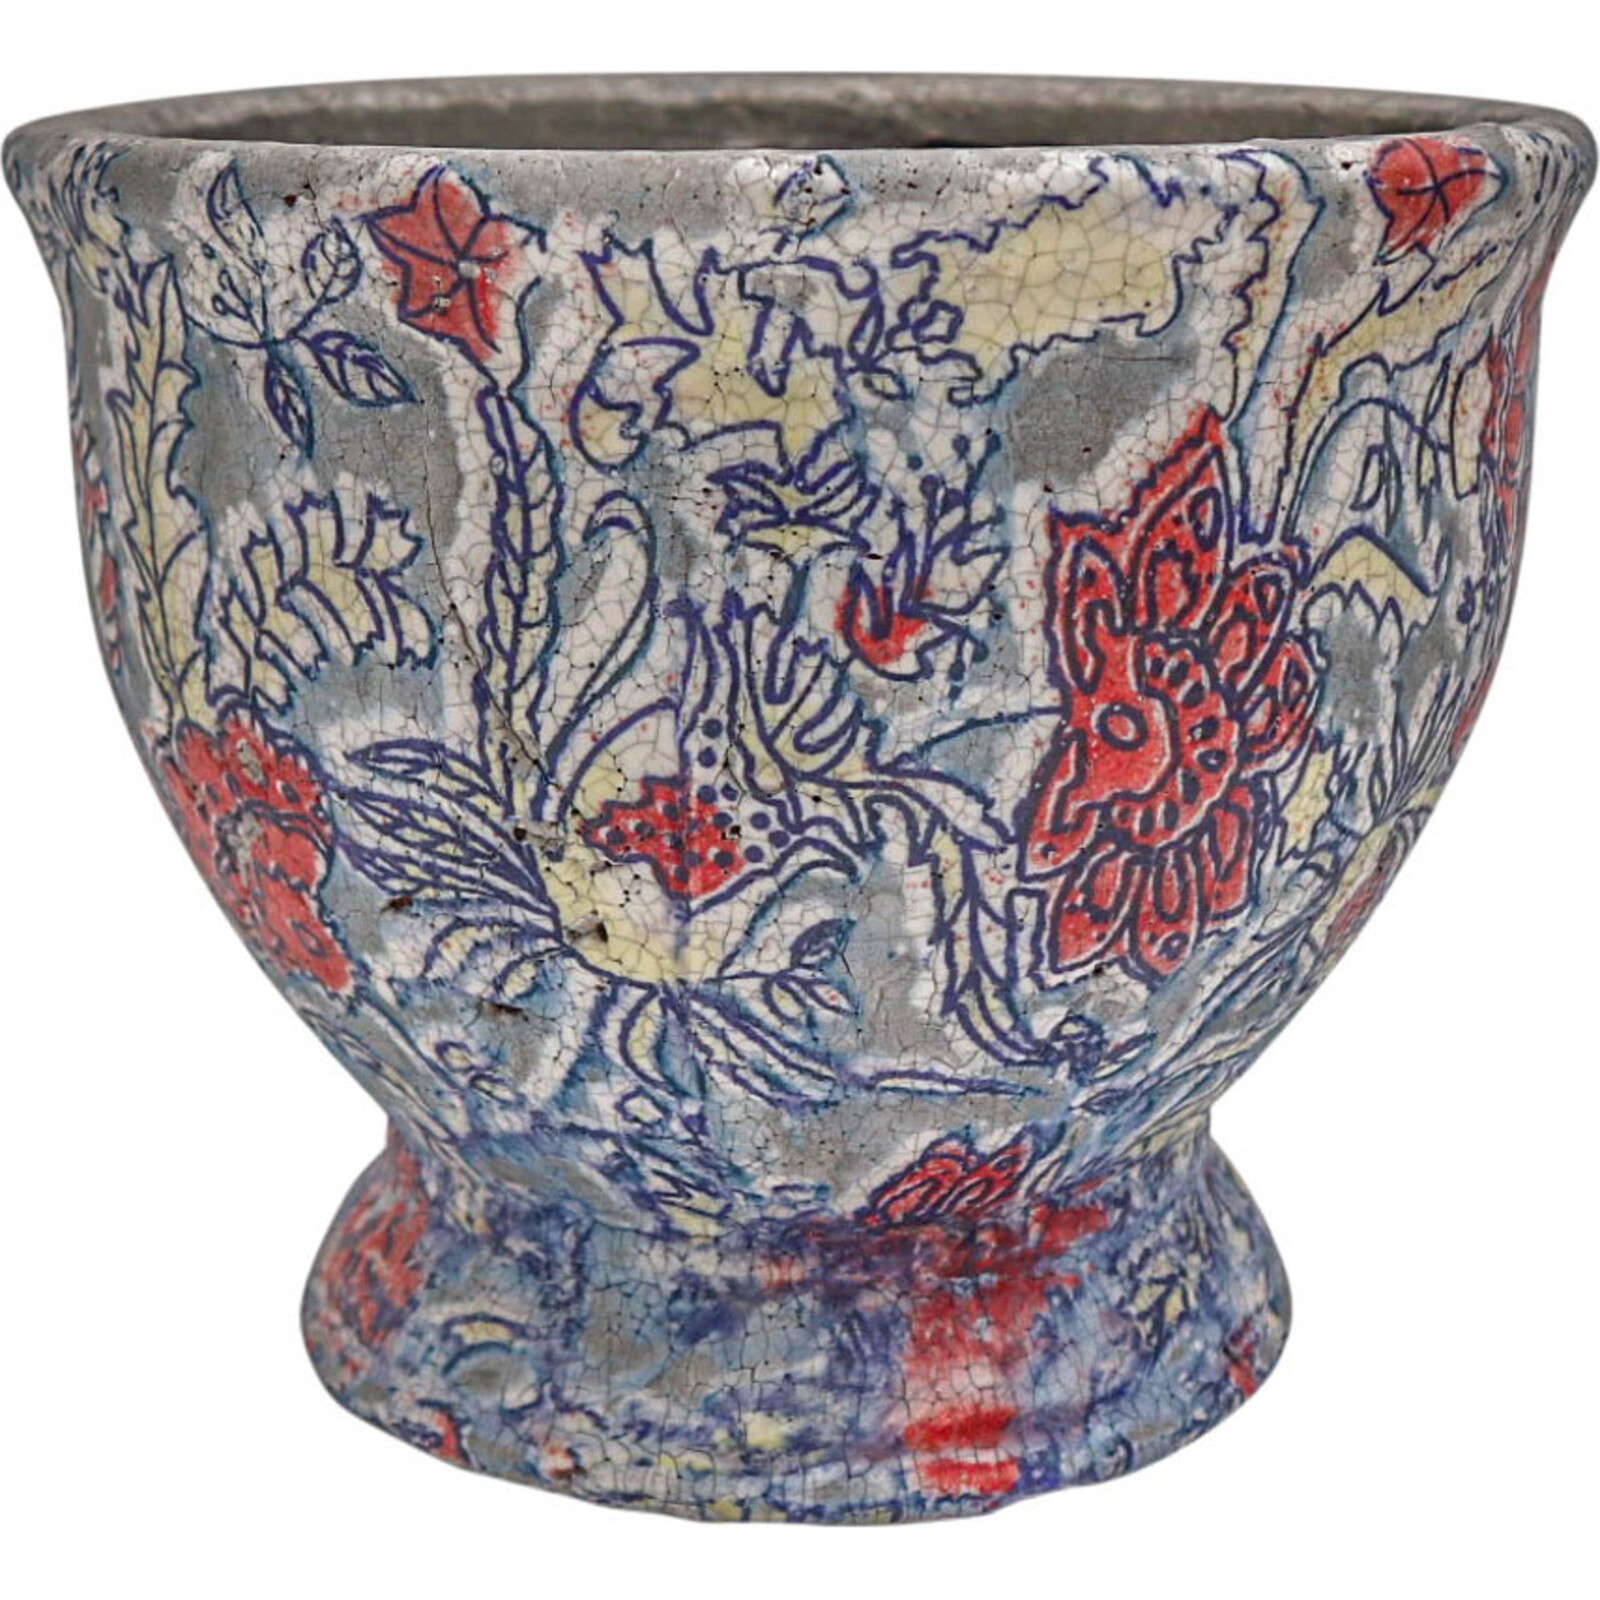 Pot Urn Sml Floral Textured